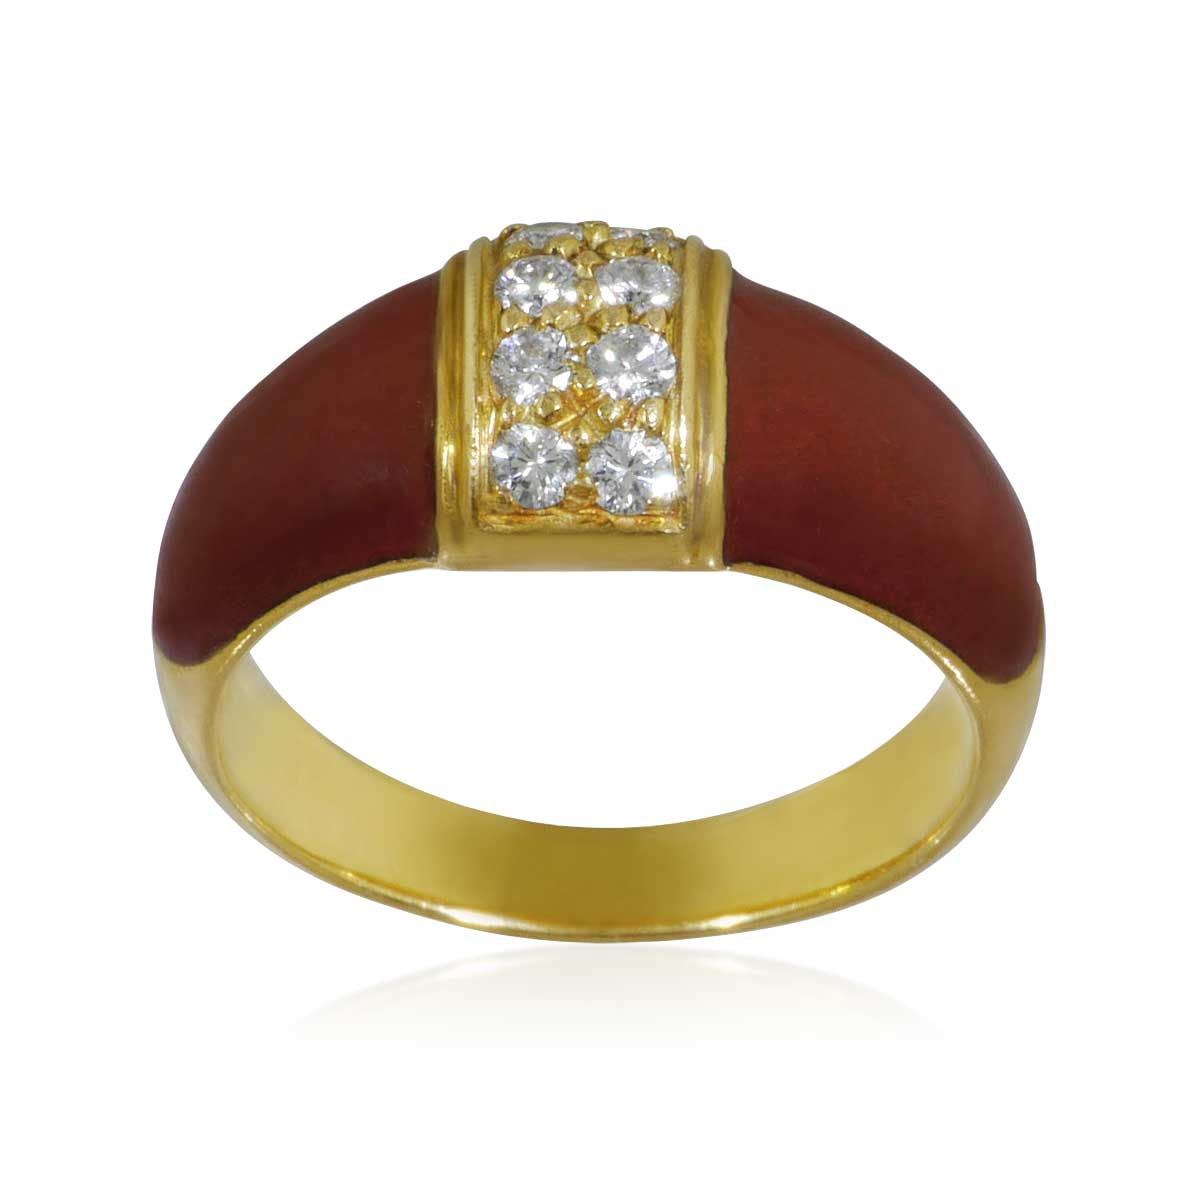   Goldring mit burgunder-rotem Email und 8 Diamanten in 750er Gelbgold 